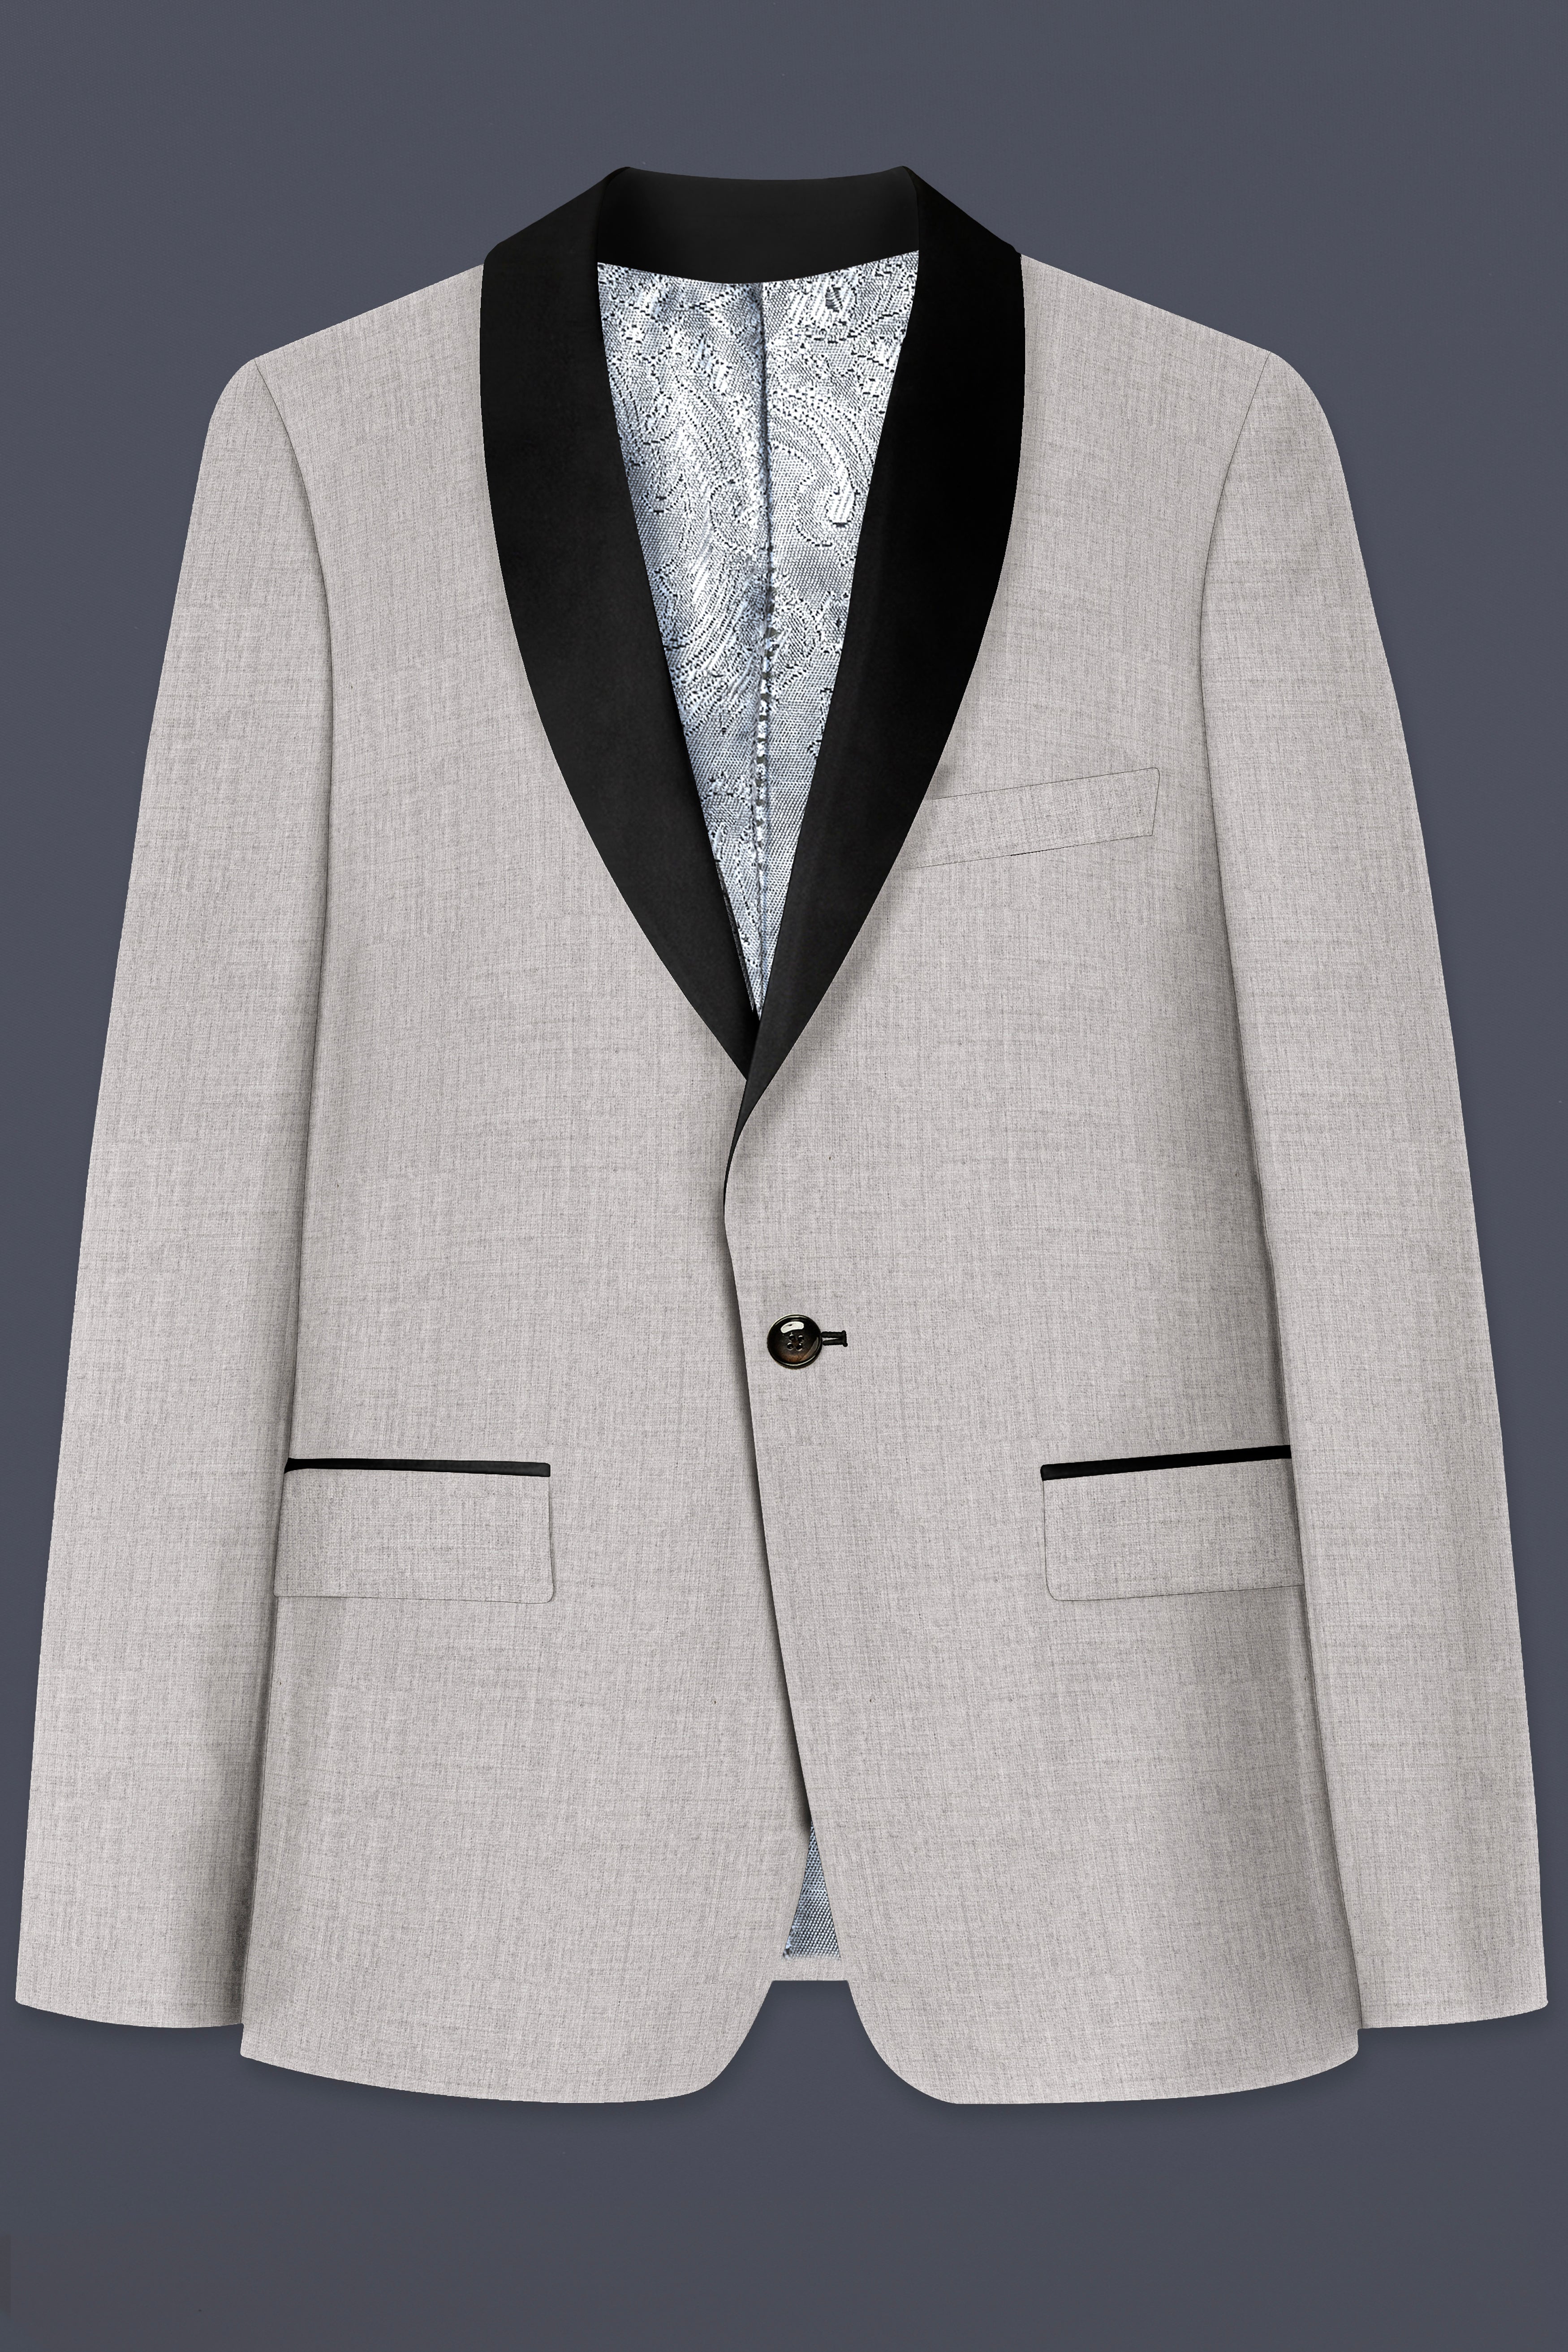 Martini Cream Textured Tuxedo Suit